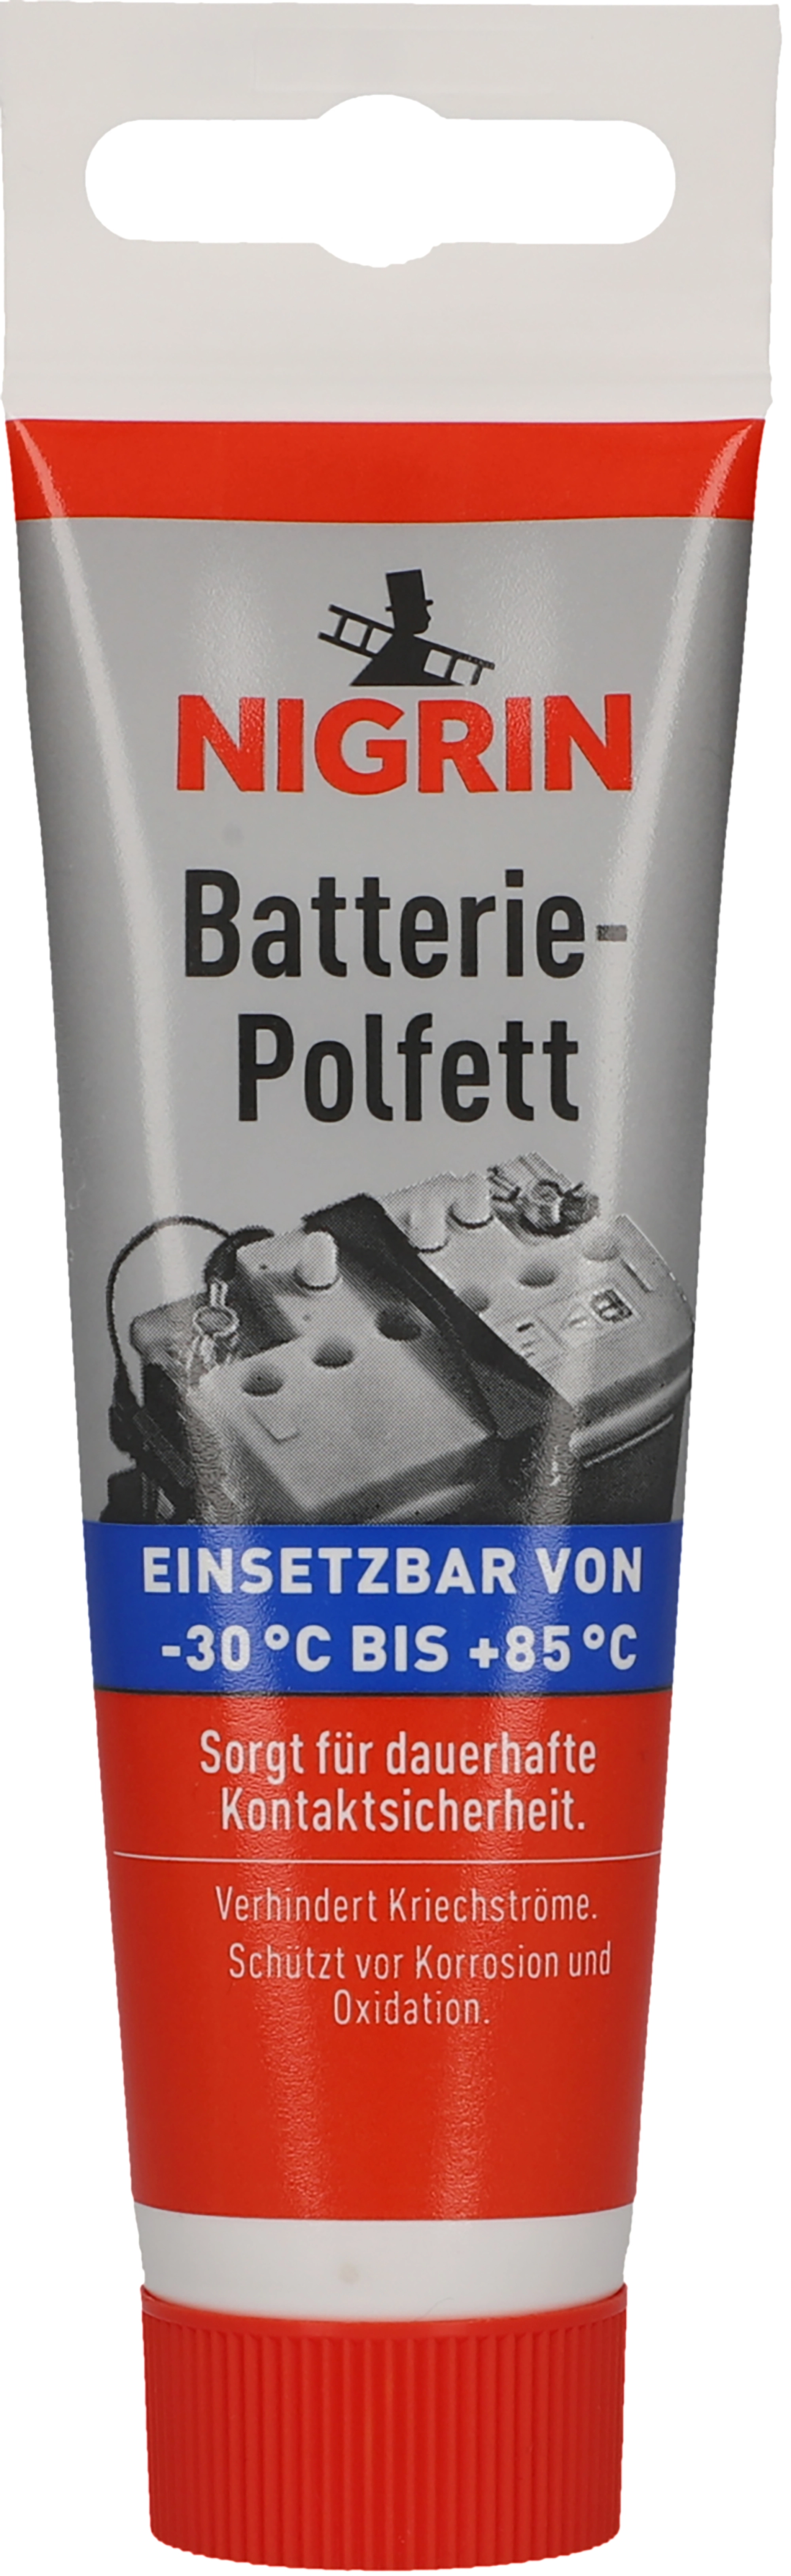 Nigrin Batterie-Polfett 50 g kaufen bei OBI